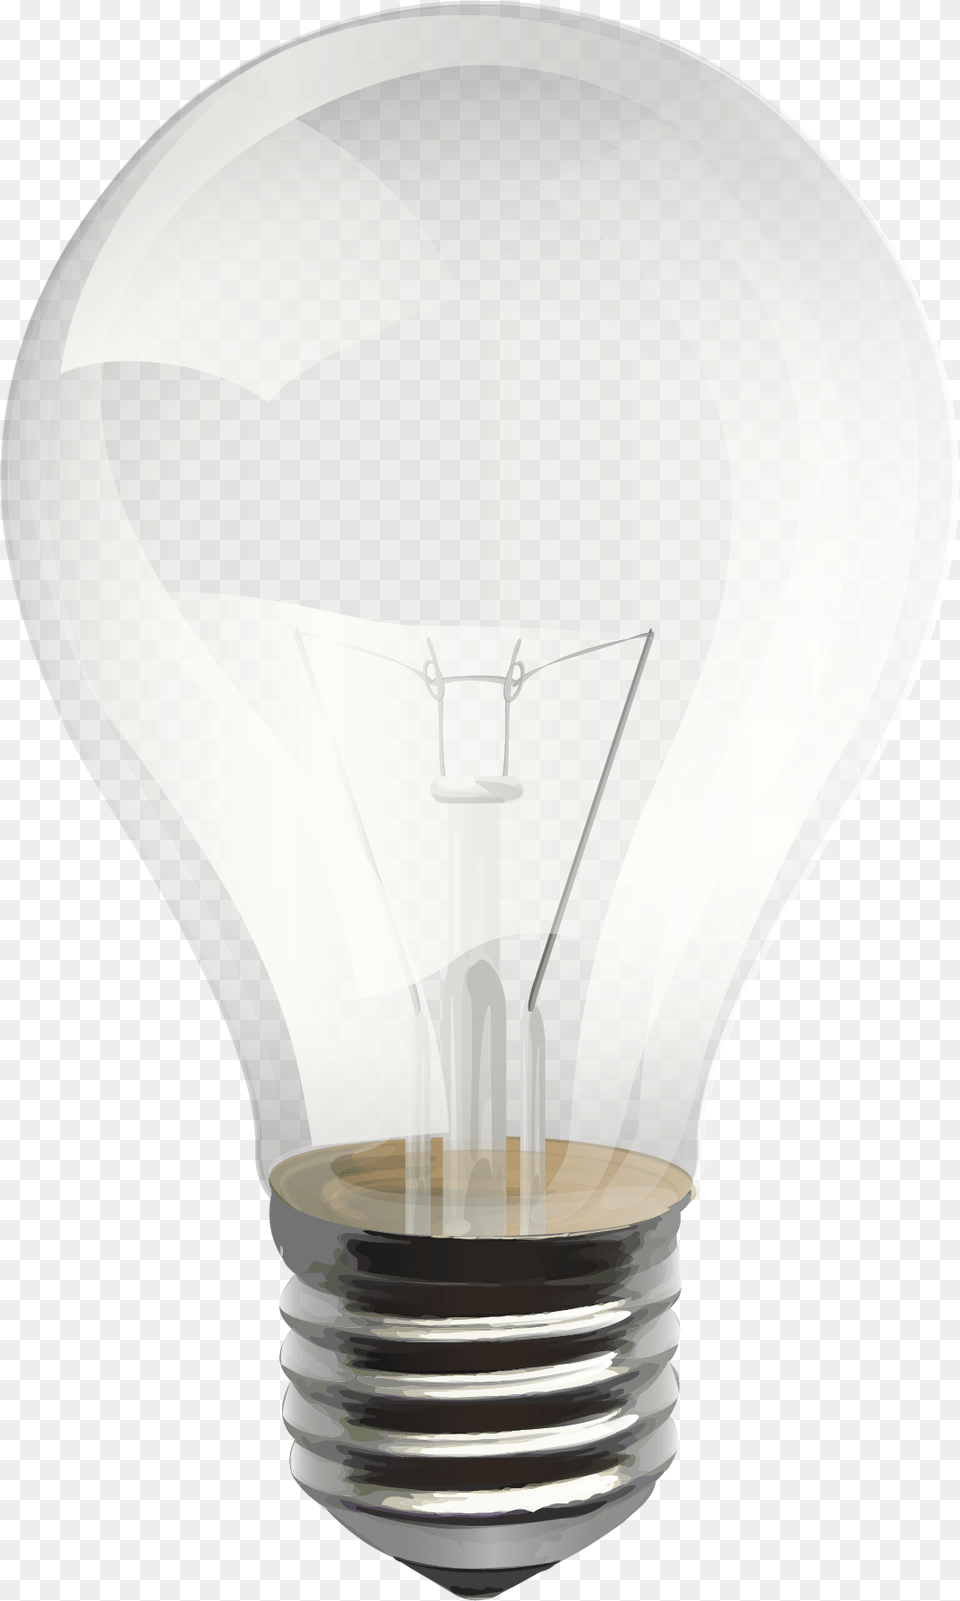 Light Bulb Transparent Images Only Incandescent Light Bulb, Lightbulb Png Image